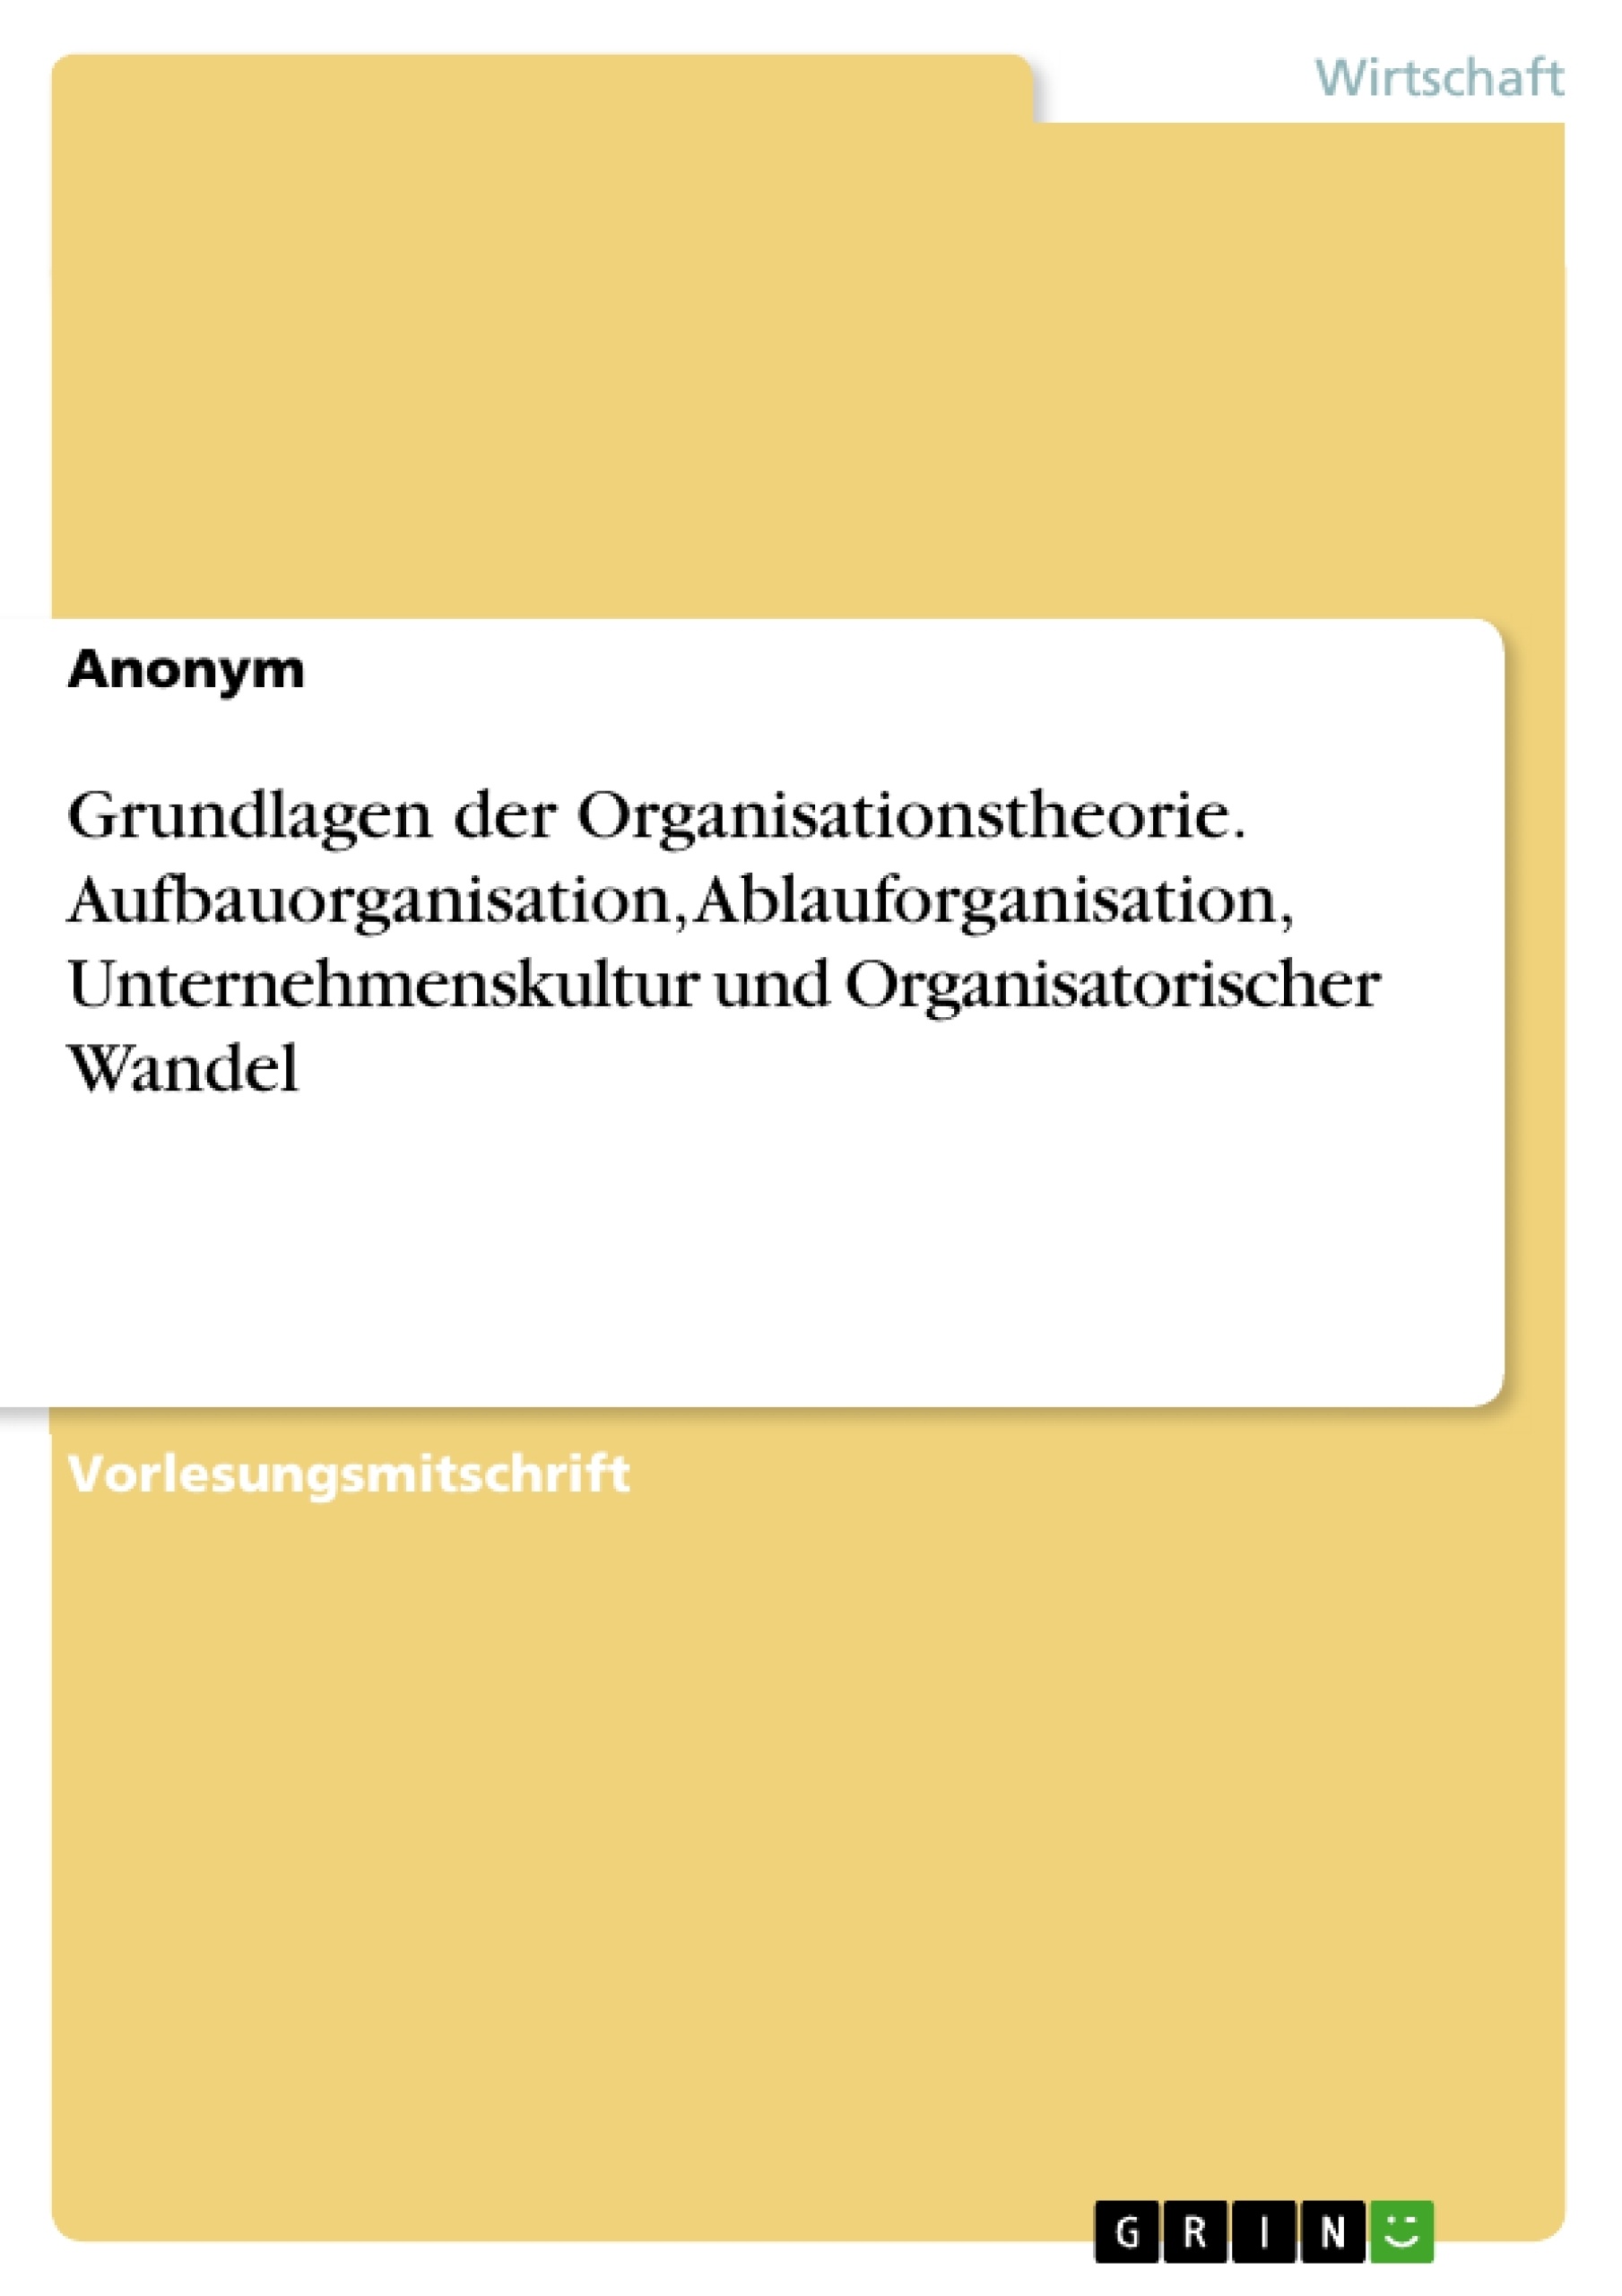 Title: Grundlagen der Organisationstheorie. Aufbauorganisation, Ablauforganisation, Unternehmenskultur und Organisatorischer Wandel